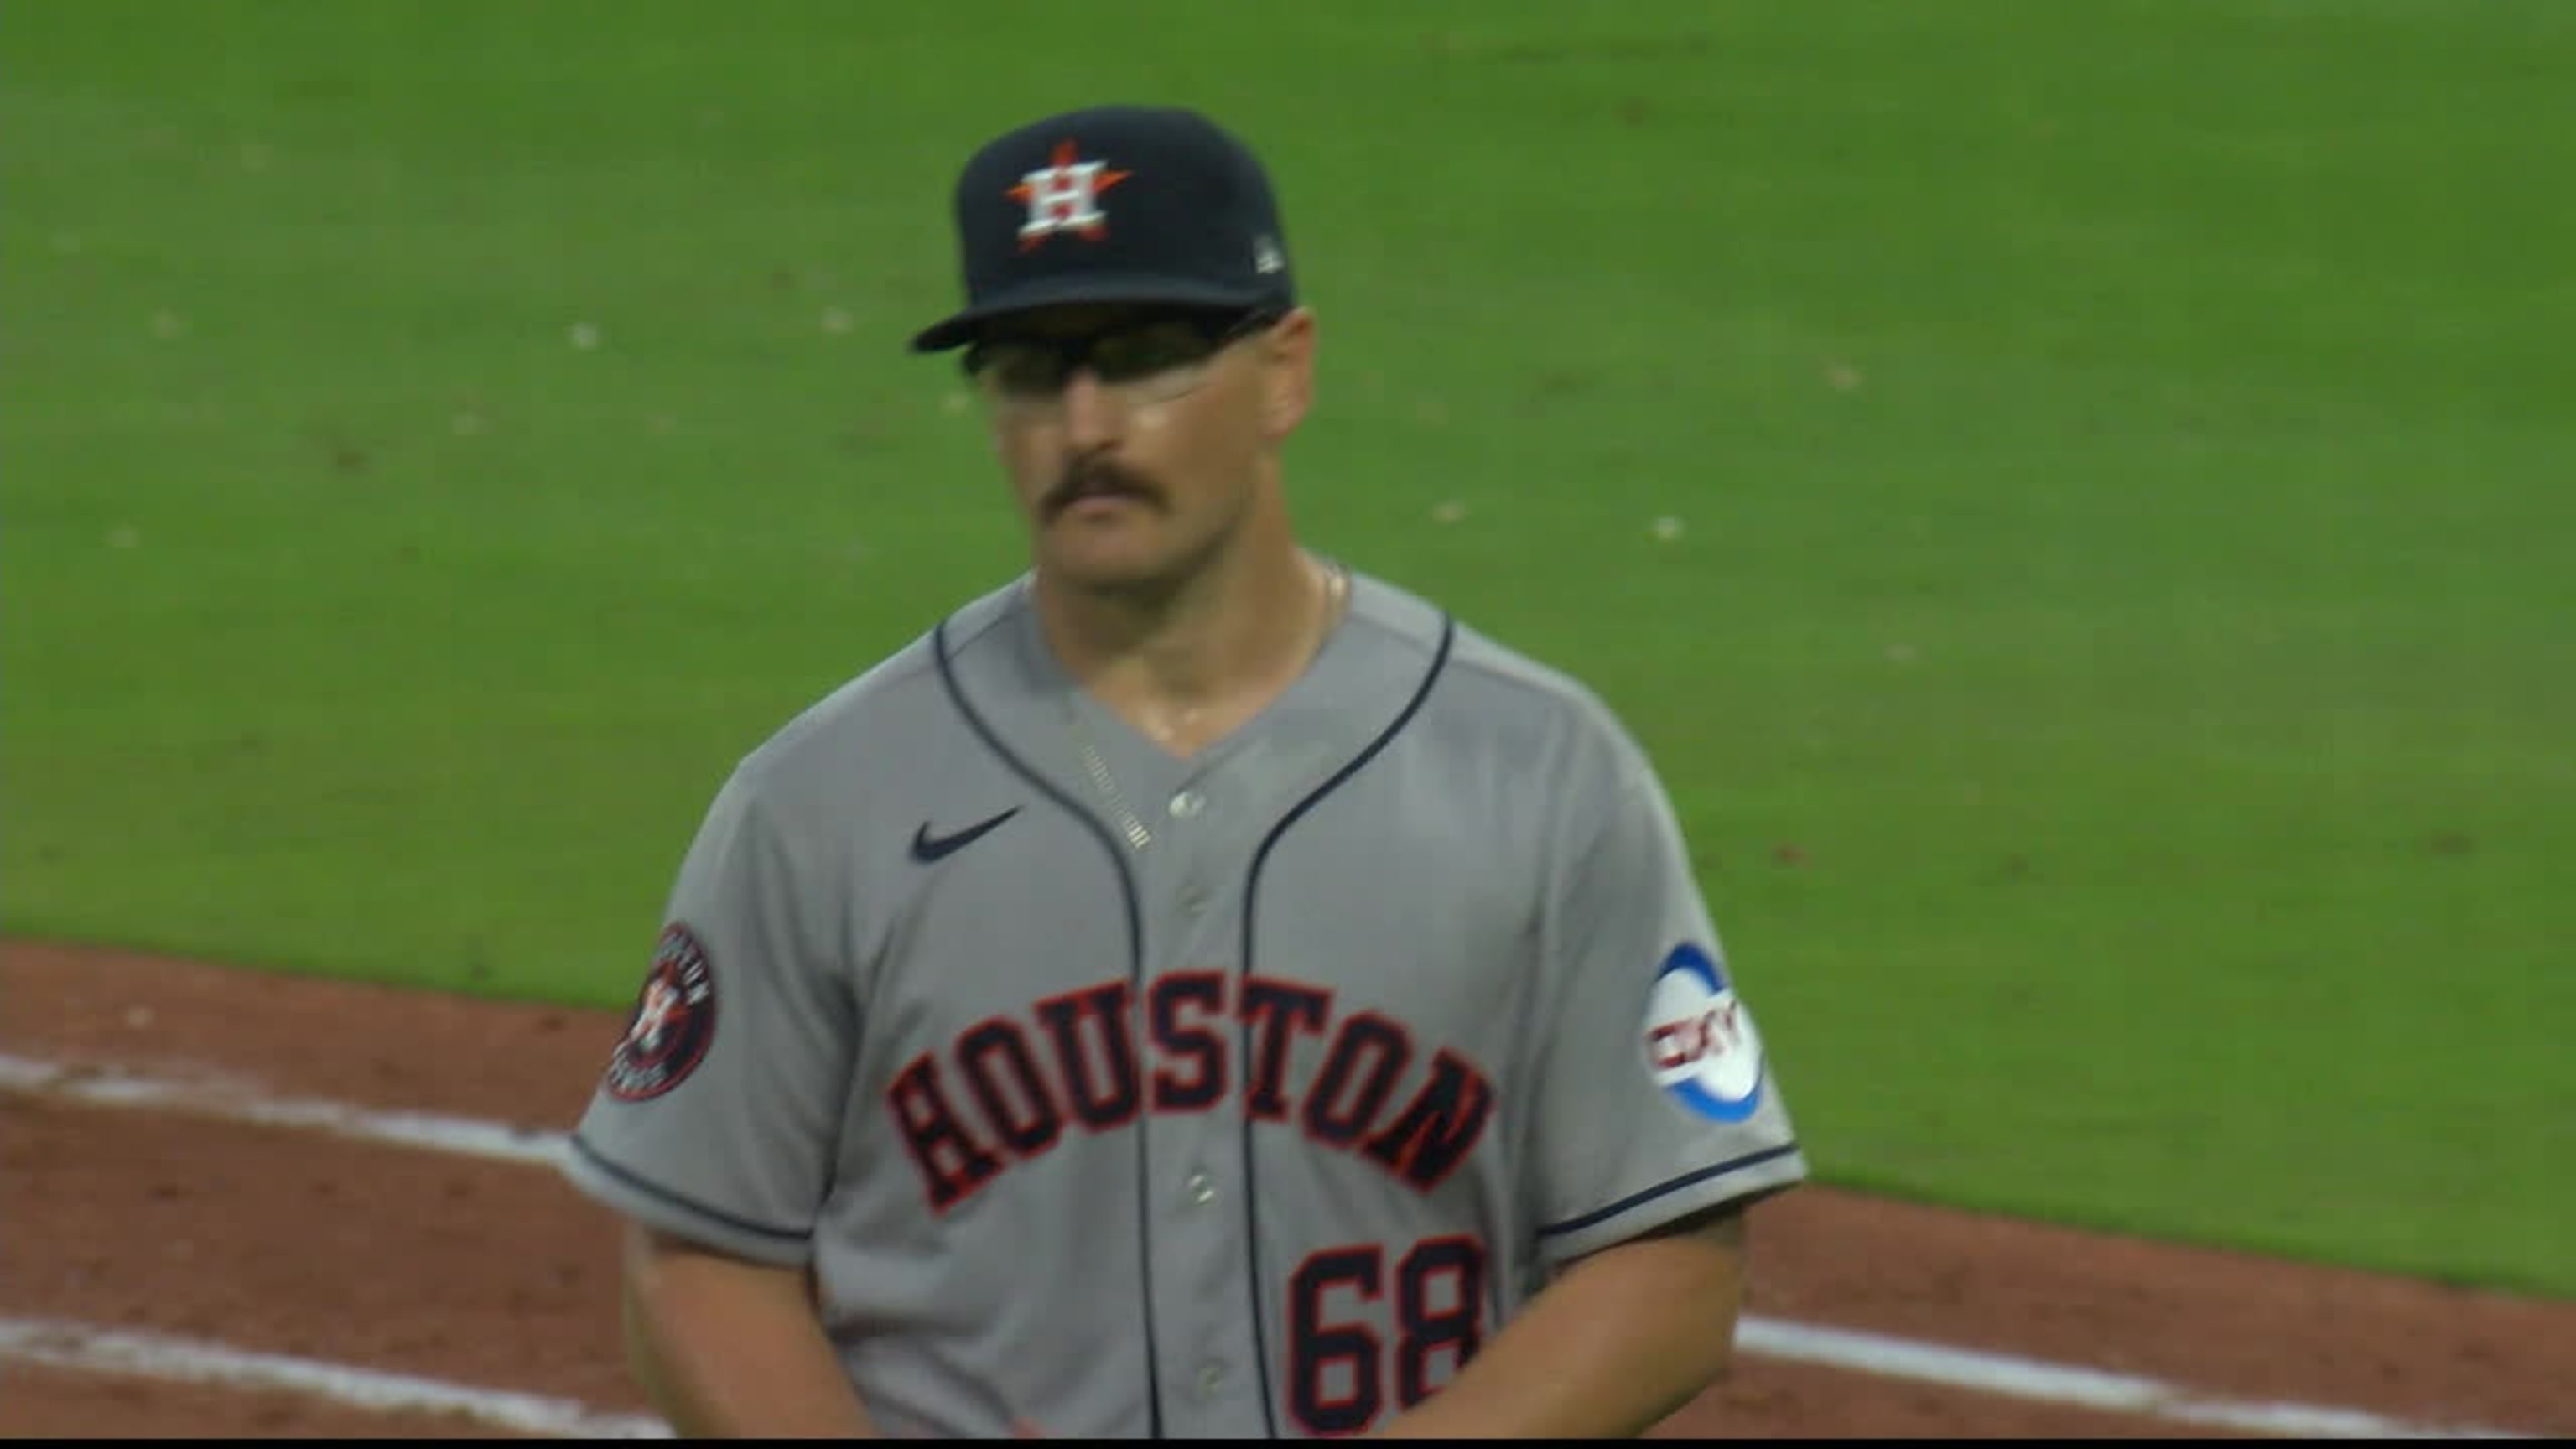 Texas Rangers annihilate Houston Astros on national TV to take